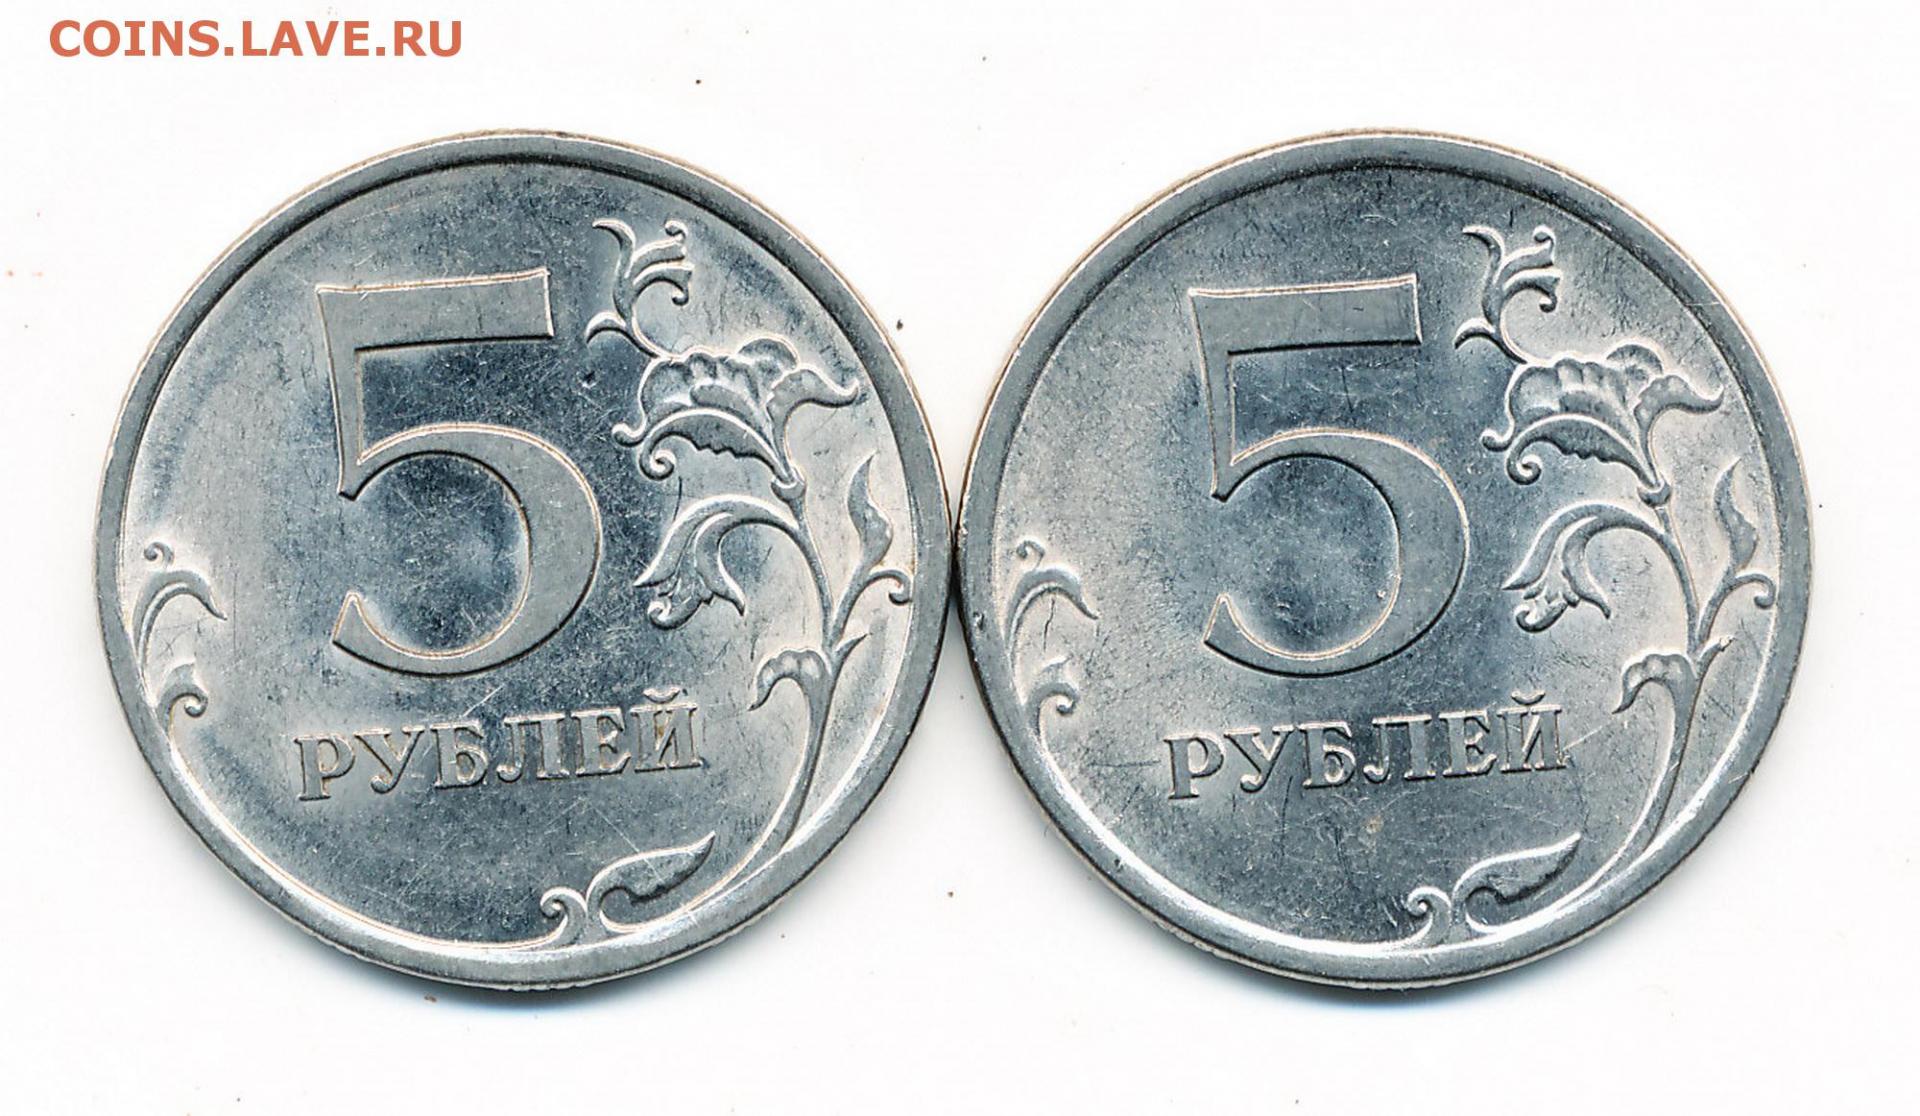 Тариф 5 рублей. 5 Рублей 2009 СПМД. 5 Рублей 2009 СПМД Аверс г. 5 Рублей 2009 в другом металле. Фото 5 рублей 2009.